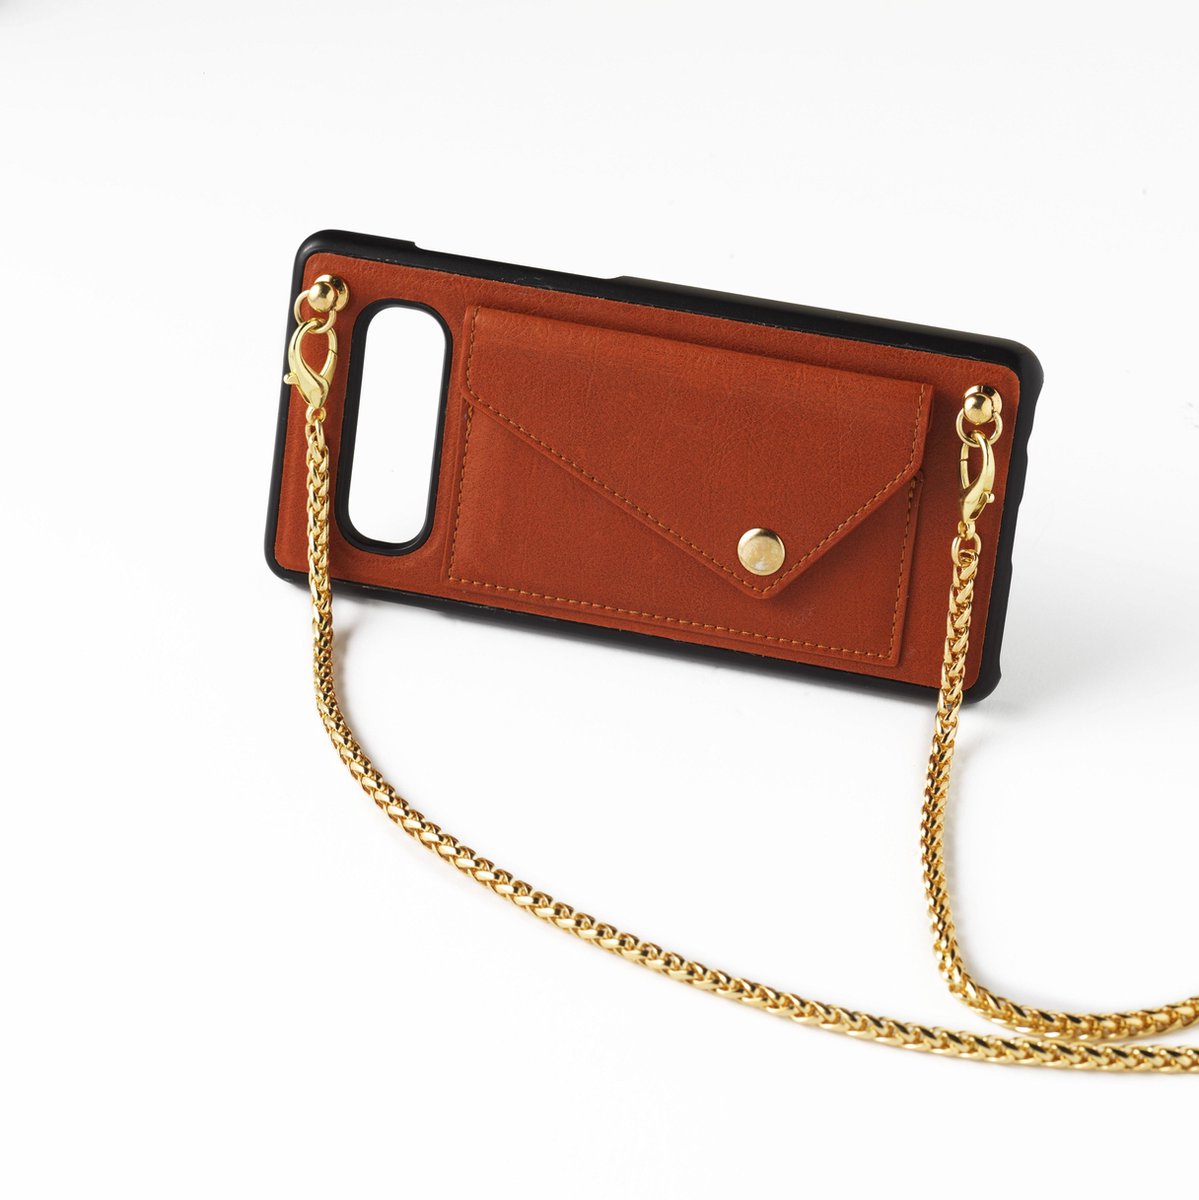 Bruine telefoonclutch Apple iPhone XR met gouden ketting